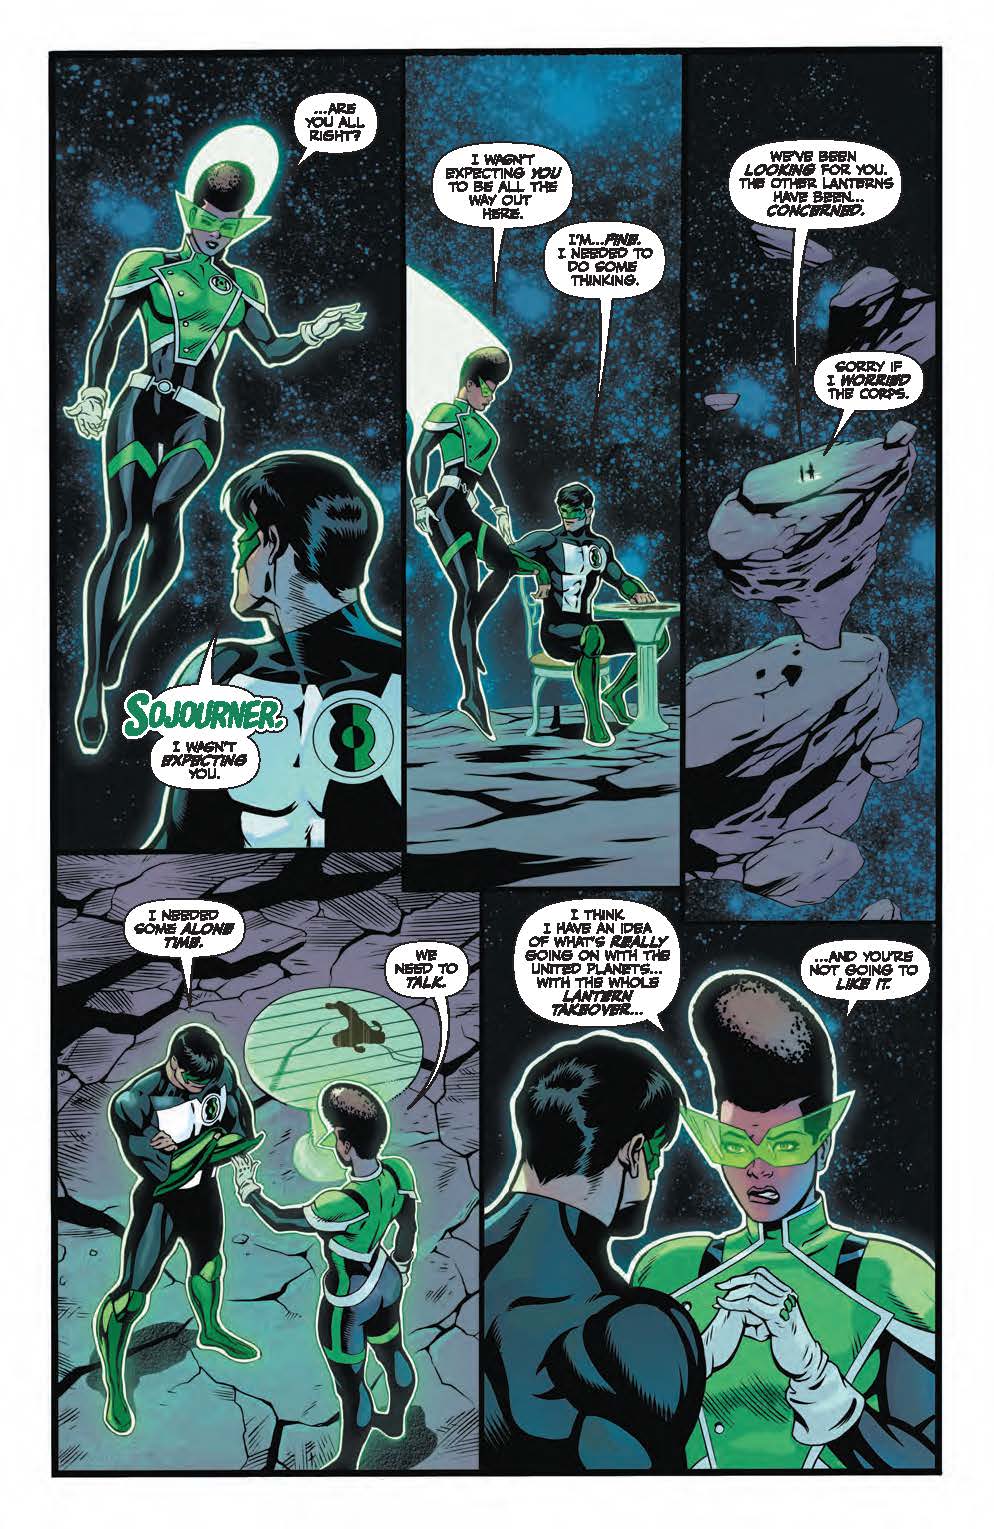 Artykuł z Green Lantern #8